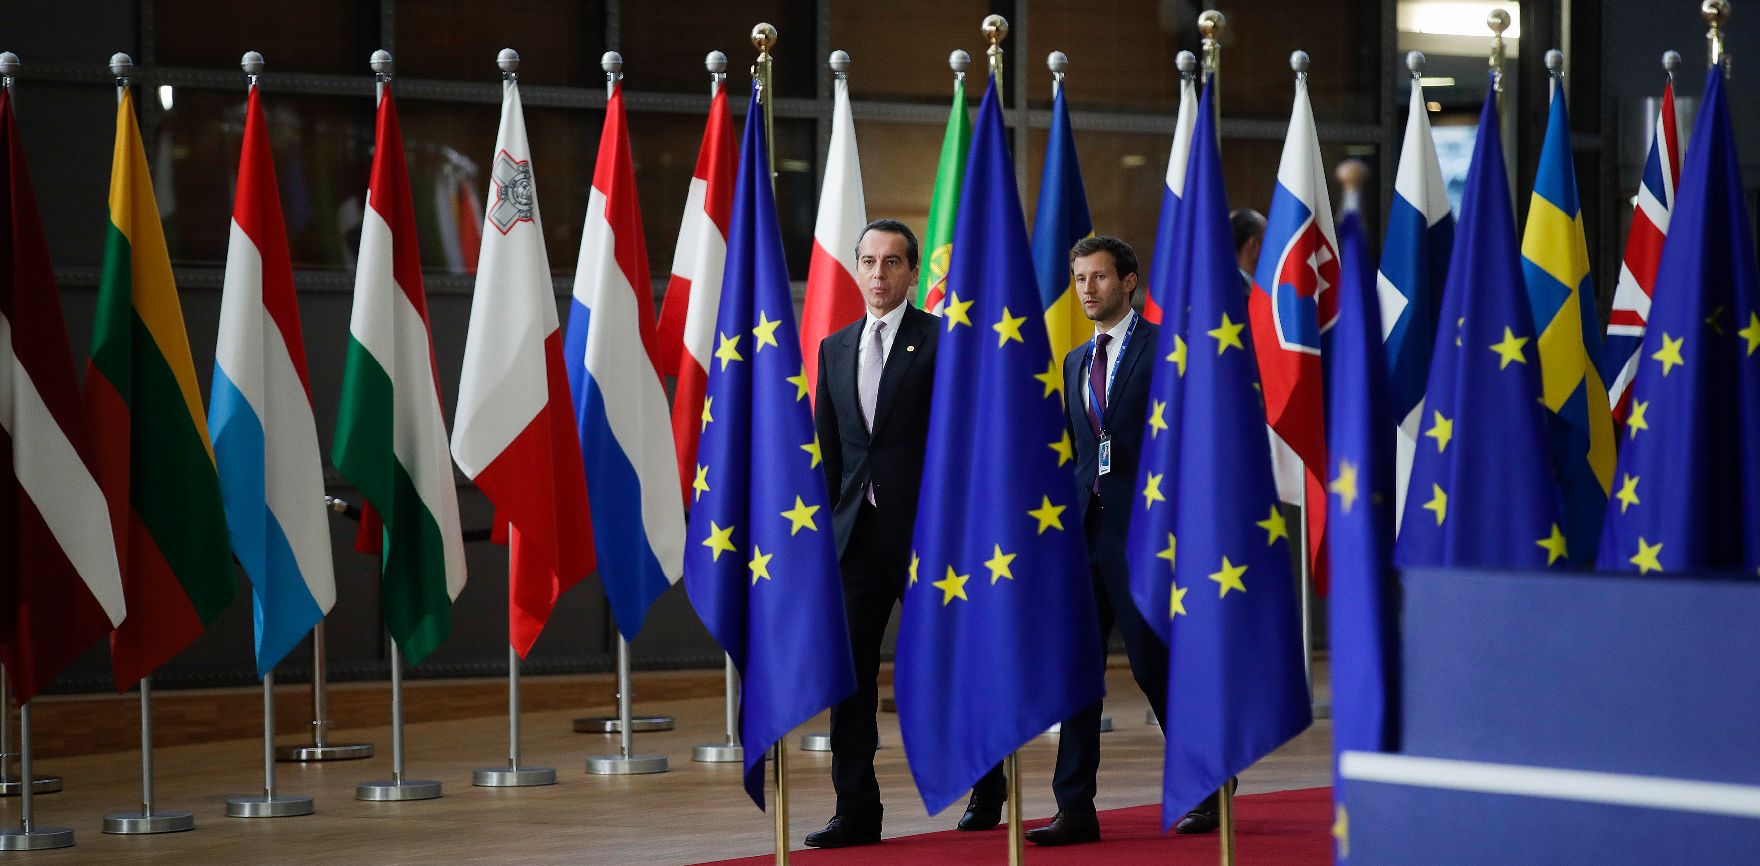 Am 14. Dezember 2017 begann in Brüssel der zweitägige Europäische Rat der Staats- und Regierungschefs. Im Bild Bundeskanzler Christian Kern am Weg zum Pressestatement.